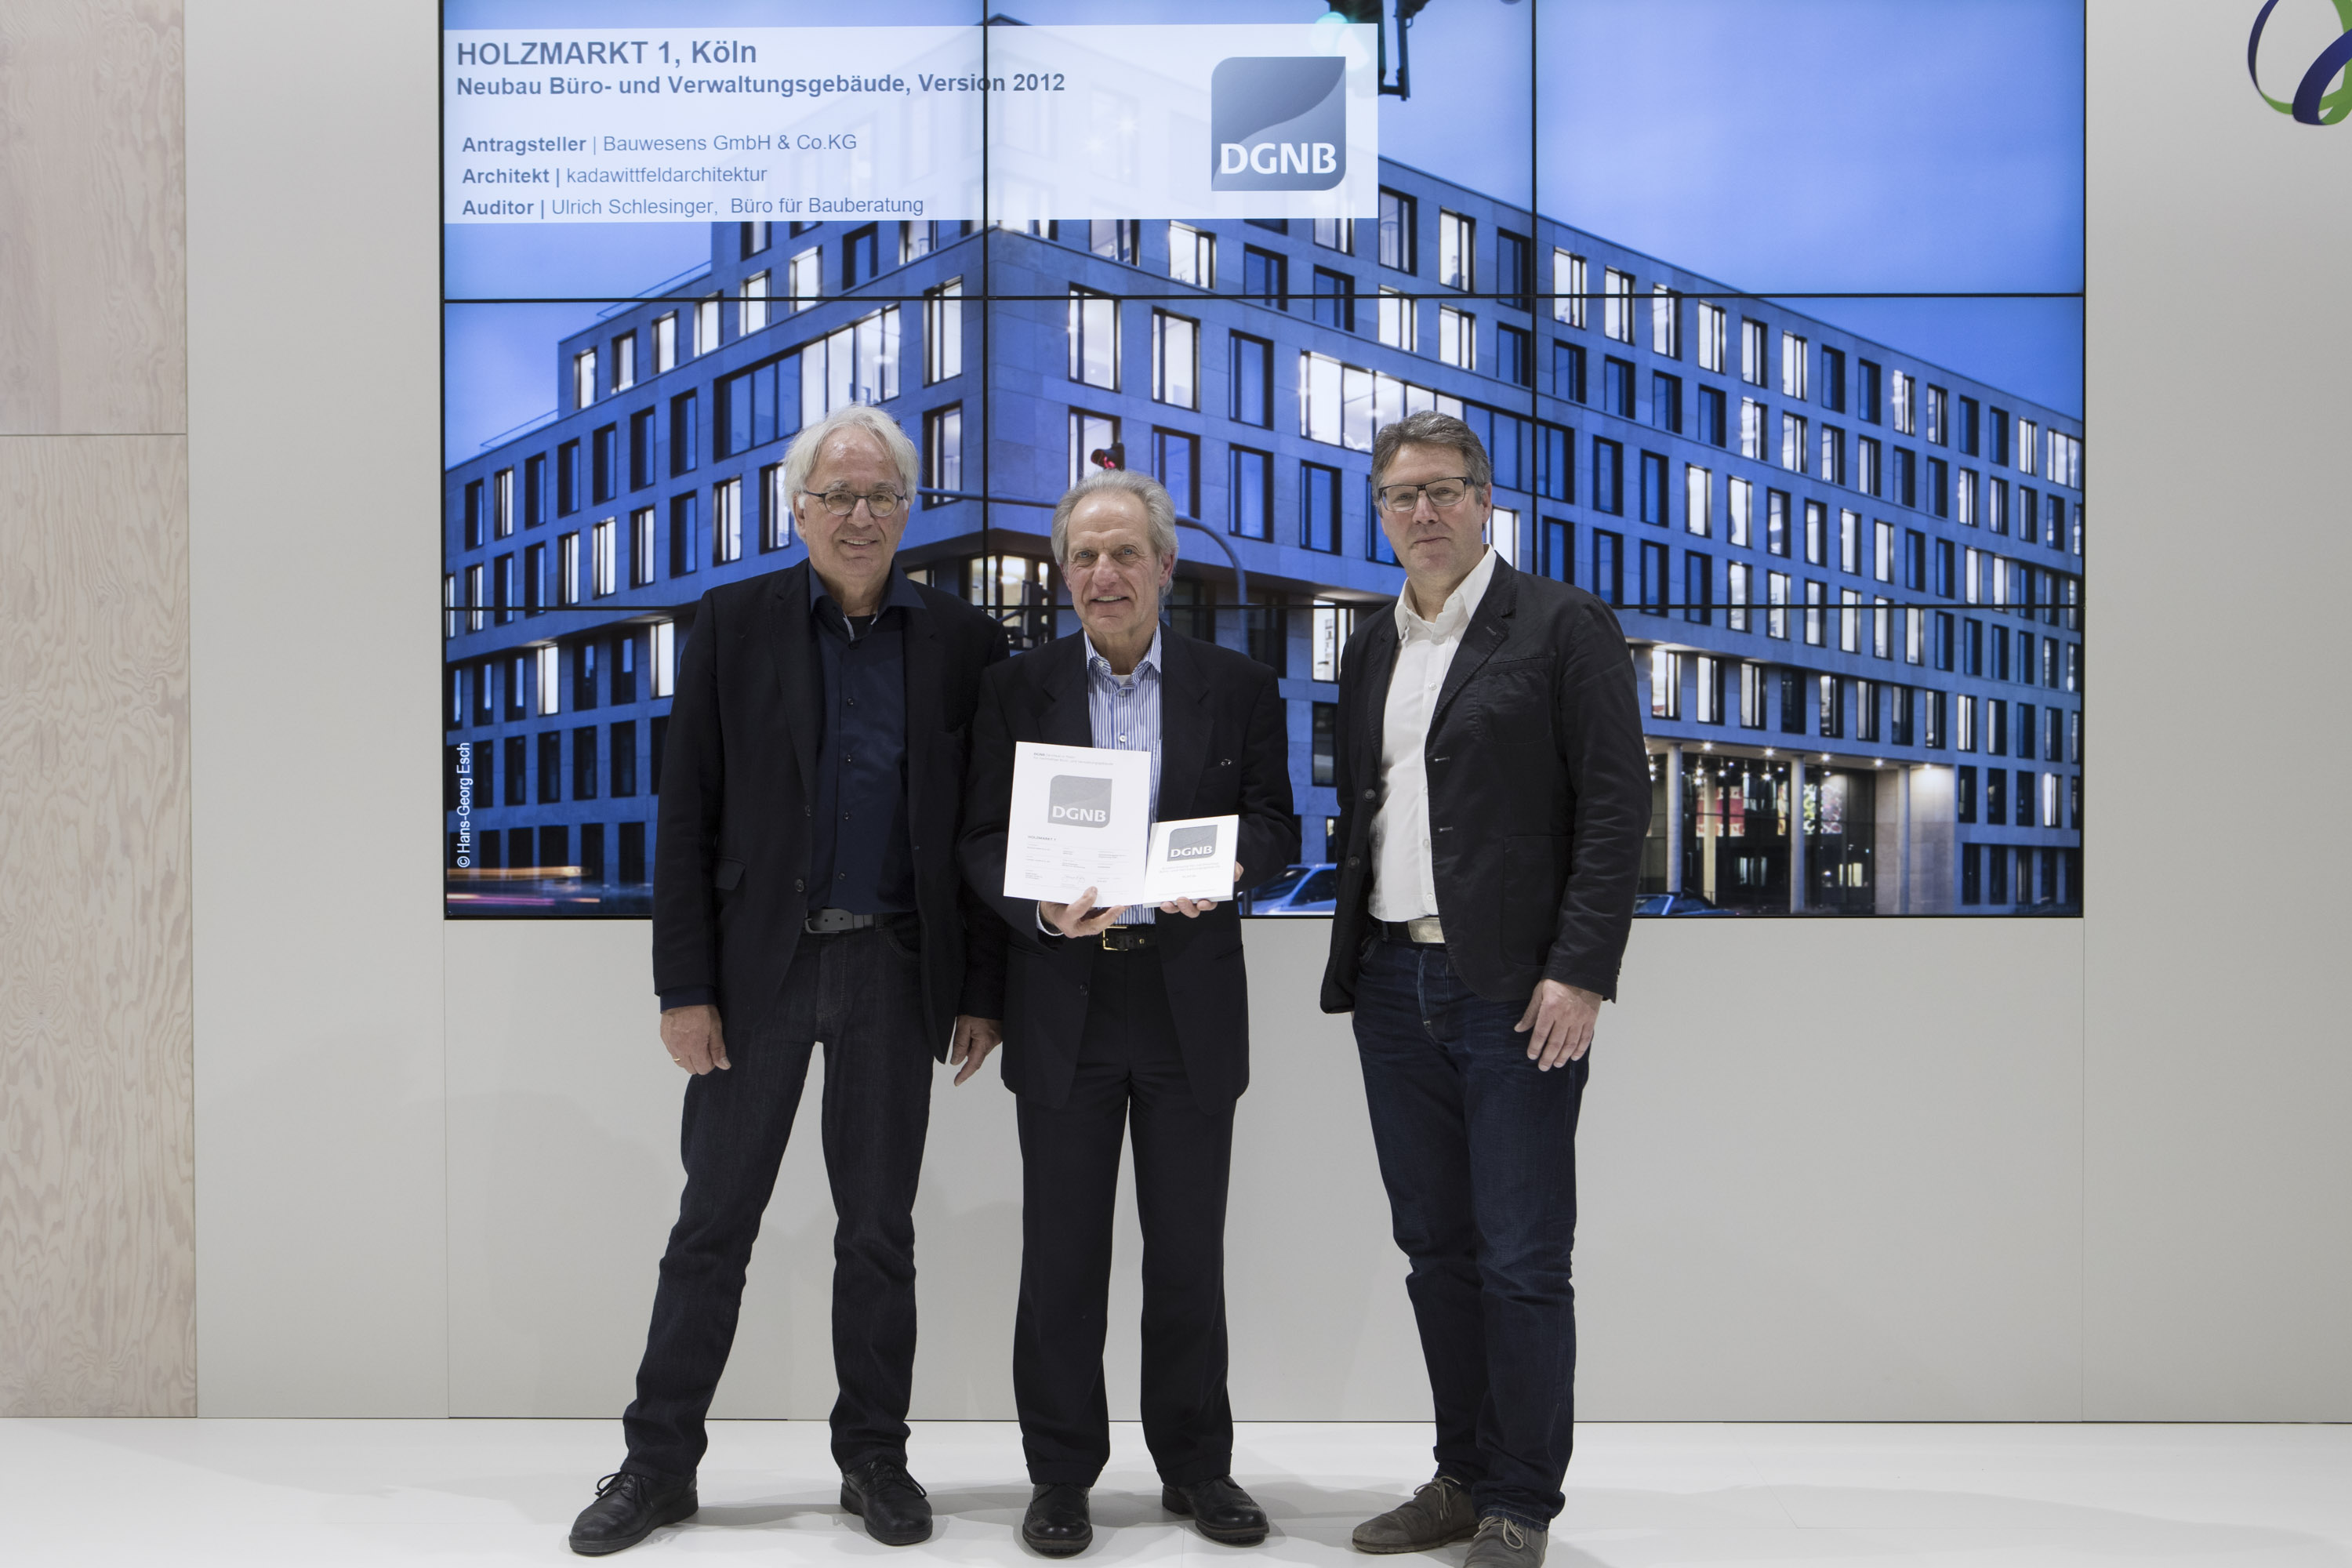 Das Projekt Holzmarkt 1 in Köln erhielt das DGNB Zertifikat in Platin, überreicht von Prof. Alexander Rudolphi (DGNB Präsident) und Johannes Kreißig (Geschäftsführer DGNB GmbH)